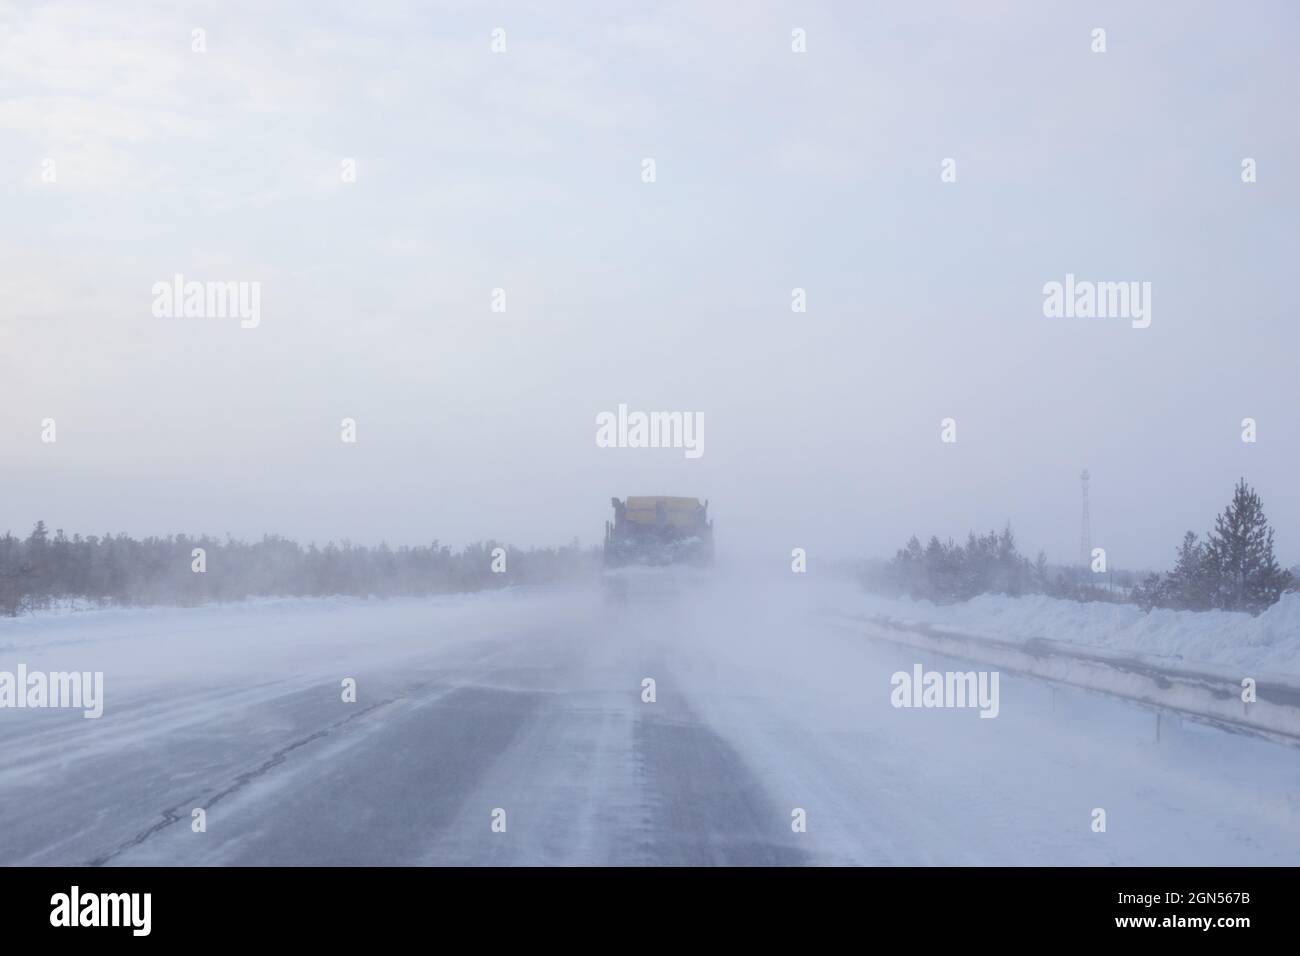 los coches van en una carretera de invierno con poca visibilidad, clima y tormenta de nieve Foto de stock